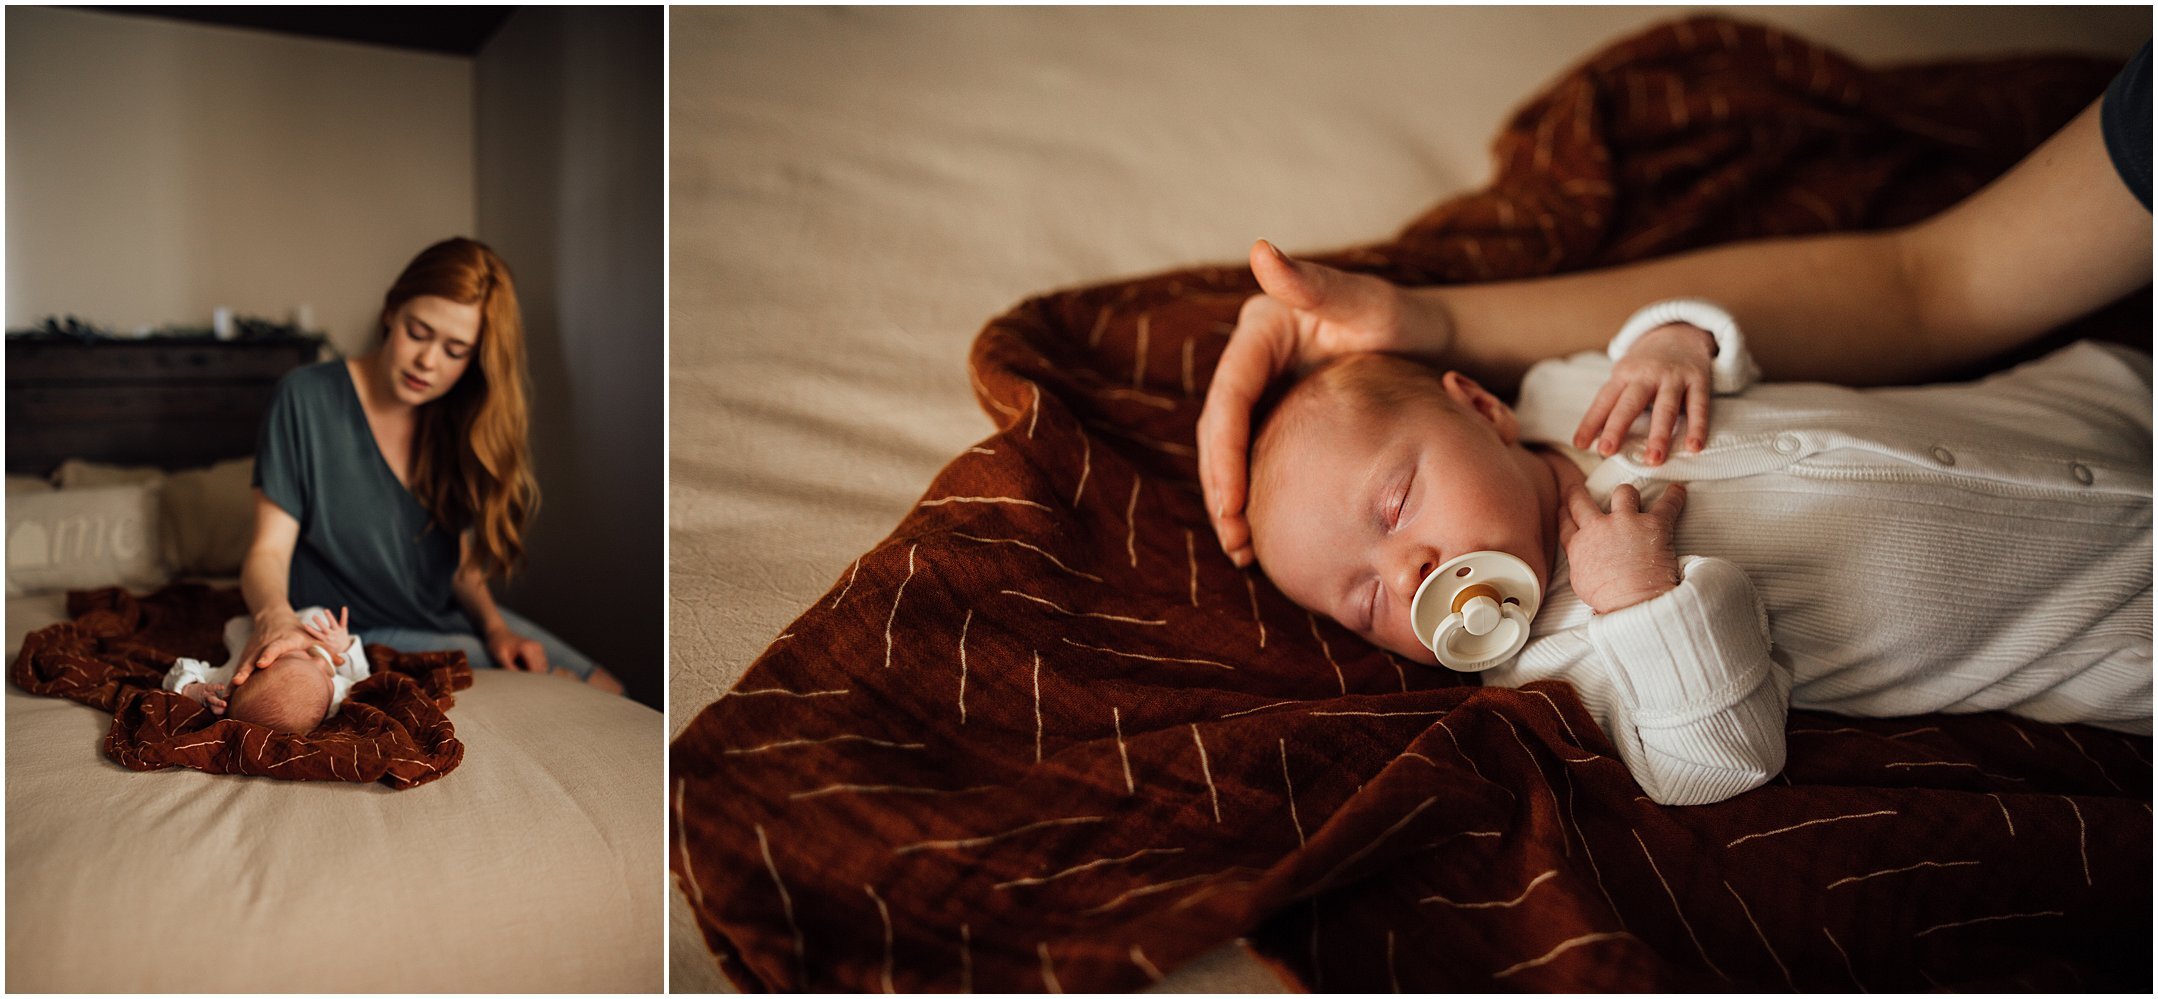 Kelly Lovan Photography | new albany, indiana newborn photography | in-home newborn photo sessions indiana | newborn candid photography | life with a newborn | newborn lifestyle photo ideas